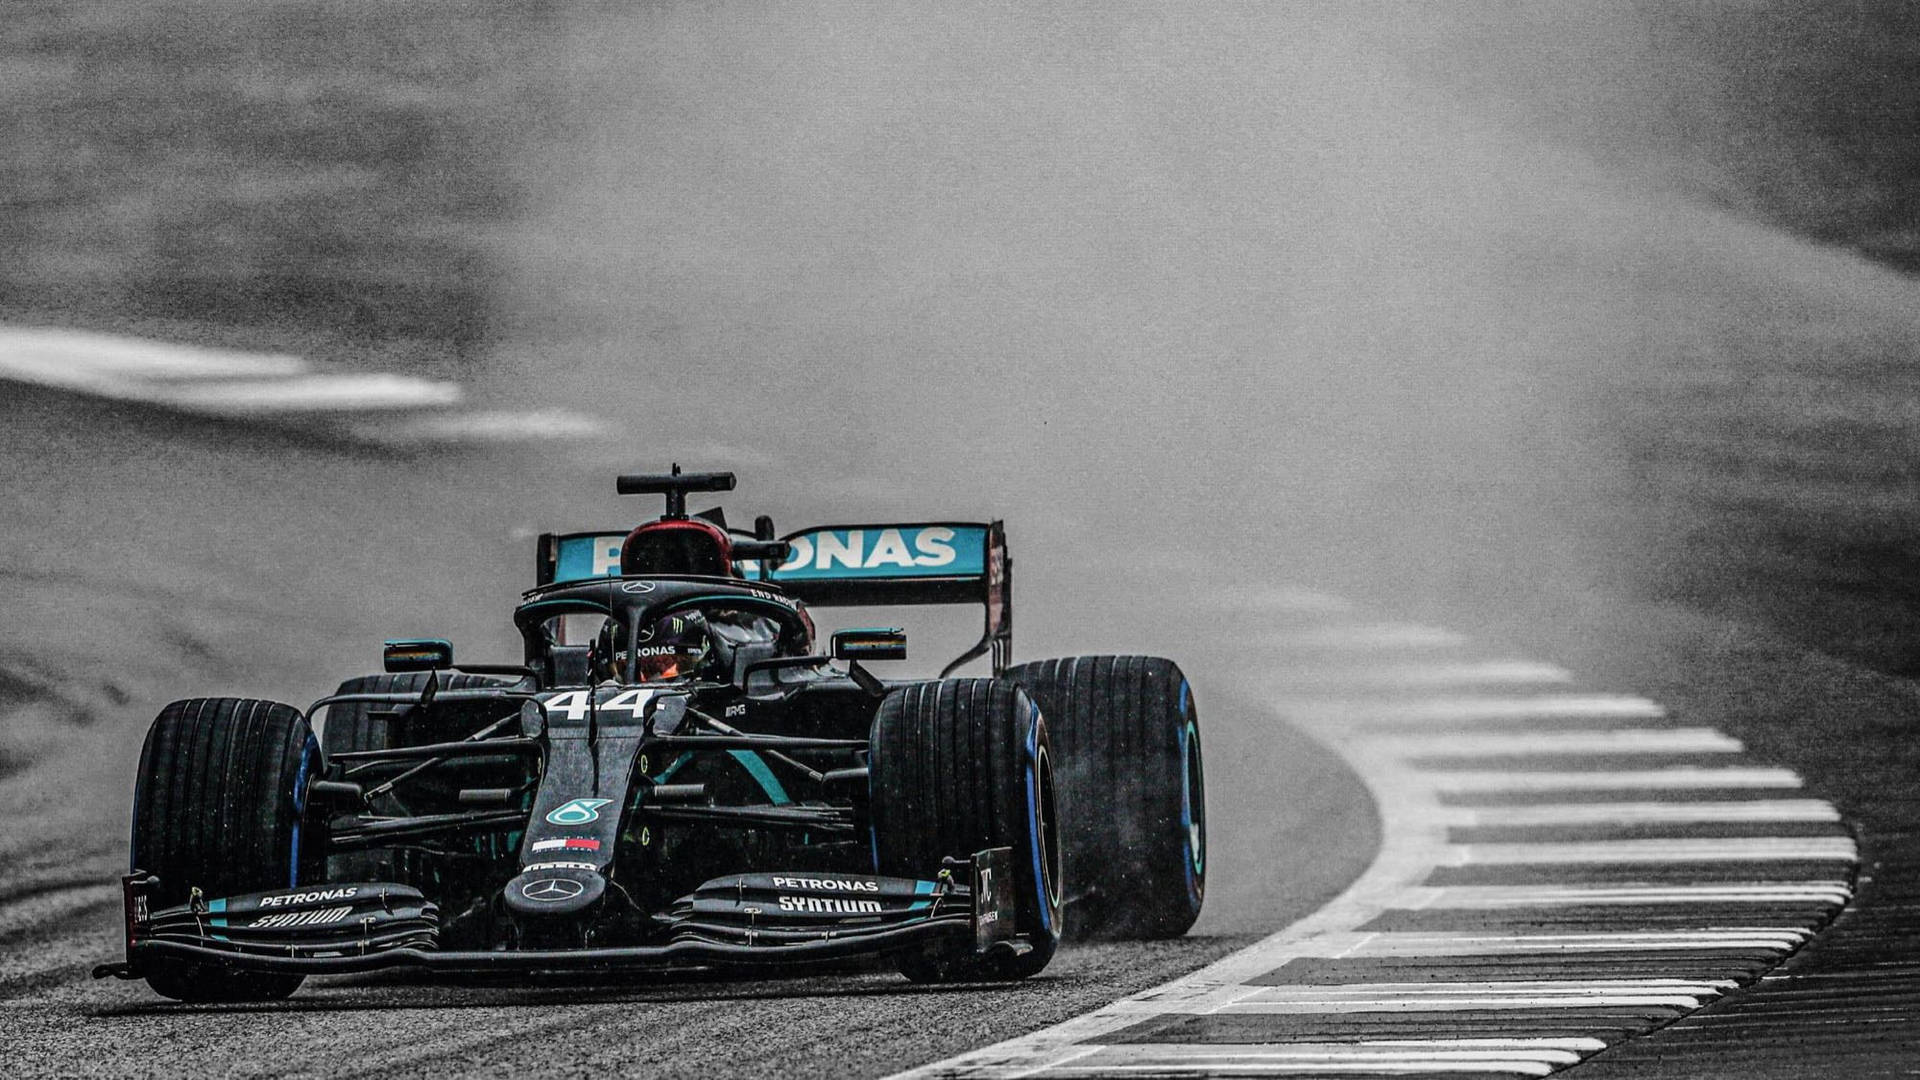 F1 Petronas Amg On Track Background